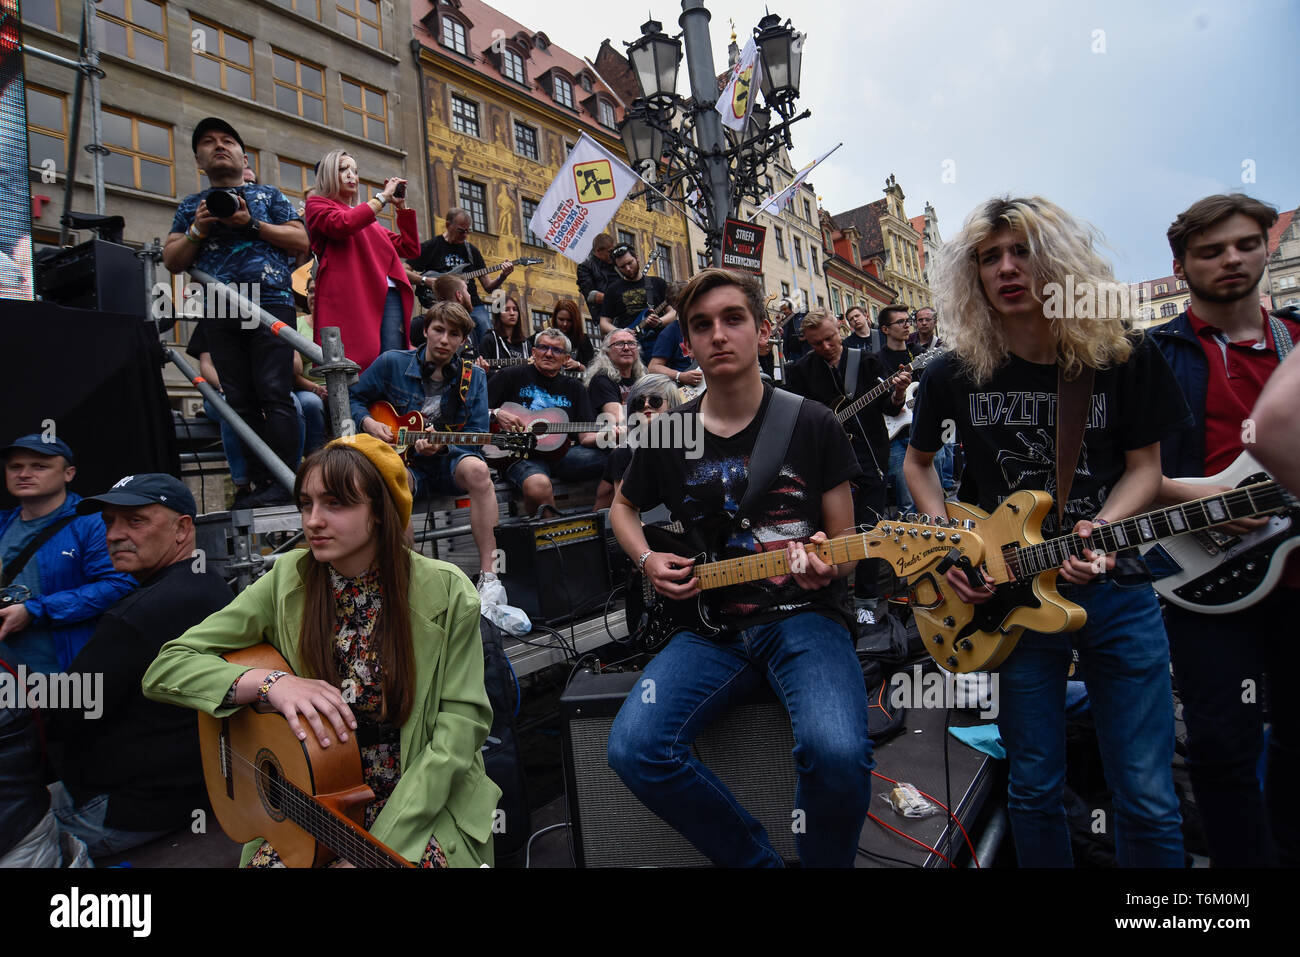 Eine Masse Sammeln von Gitarristen gesehen, die versuchen den Guinness-rekord für Ensemble Gitarre spielen auf dem Hauptplatz zu schlagen. Laut Veranstalter, Berichte sagen 7243 Musiker in Breslau Marktplatz versammelt Jimi Hendrix's Hit zu spielen 'Hey Joe'. Stockfoto